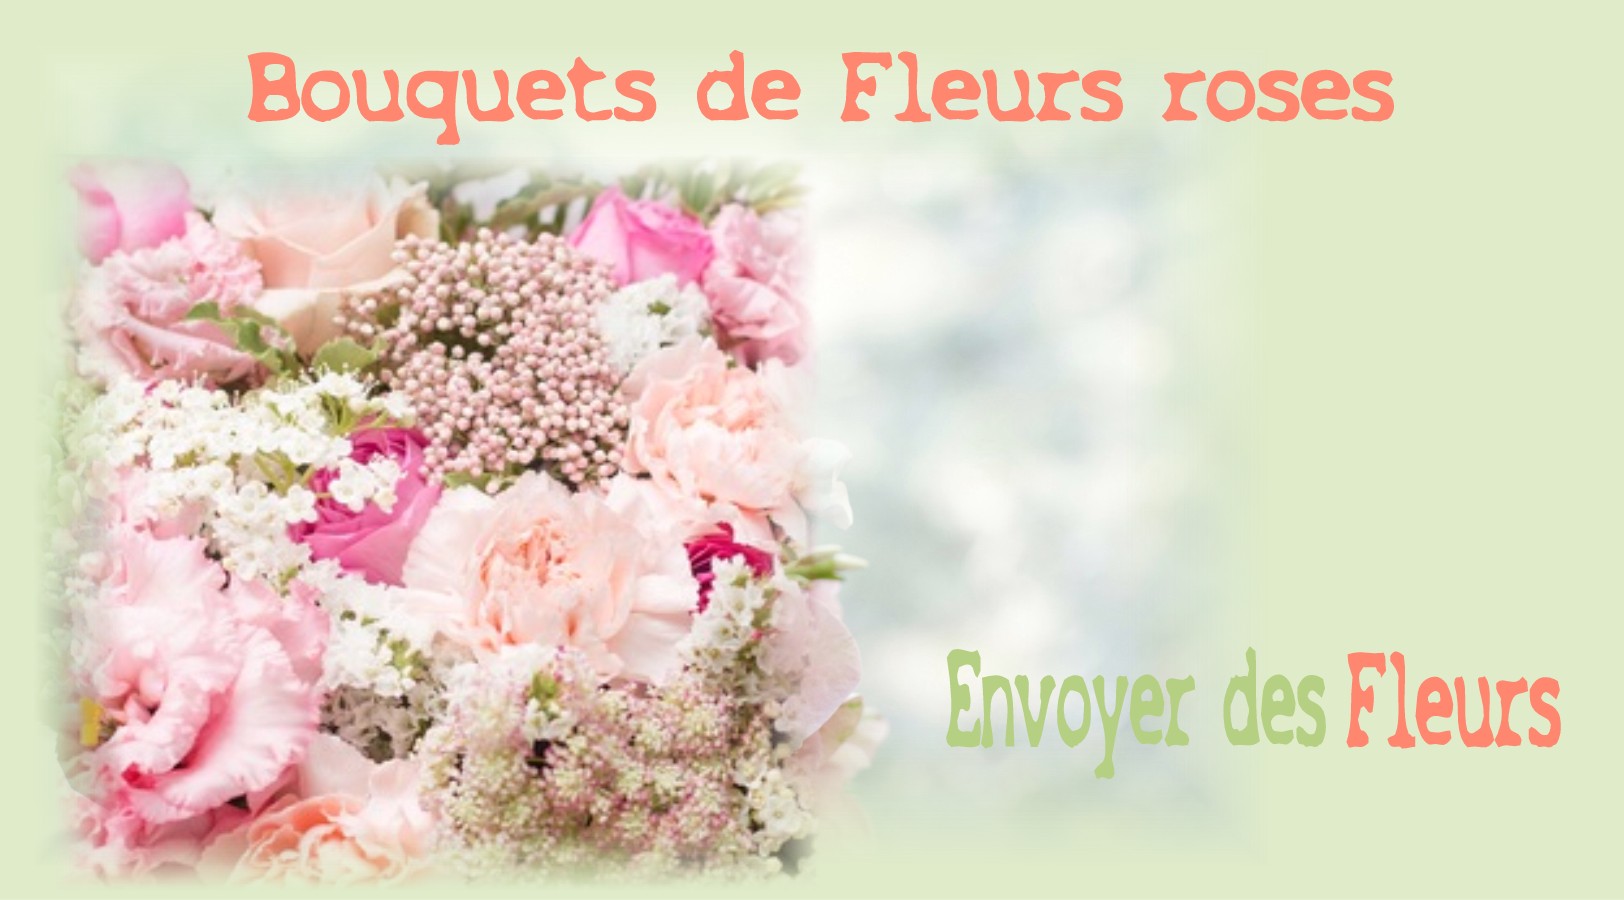 BOUQUETS DE FLEURS ROSES - FLEURISTE NICE (06) - ENVOYER DES FLEURS